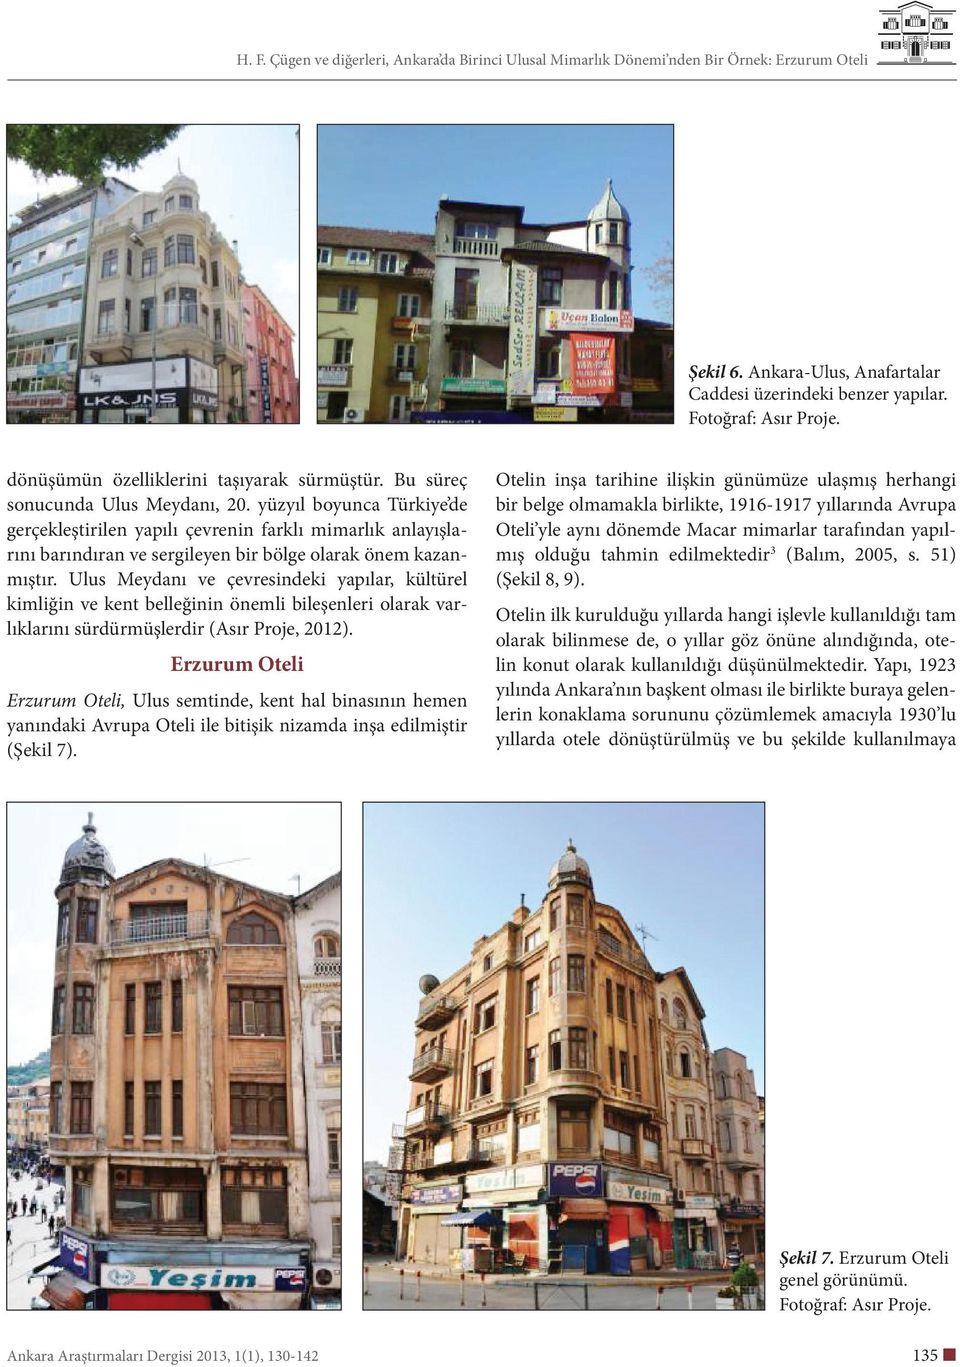 Ulus Meydanı ve çevresindeki yapılar, kültürel kimliğin ve kent belleğinin önemli bileşenleri olarak varlıklarını sürdürmüşlerdir (Asır Proje, 2012).